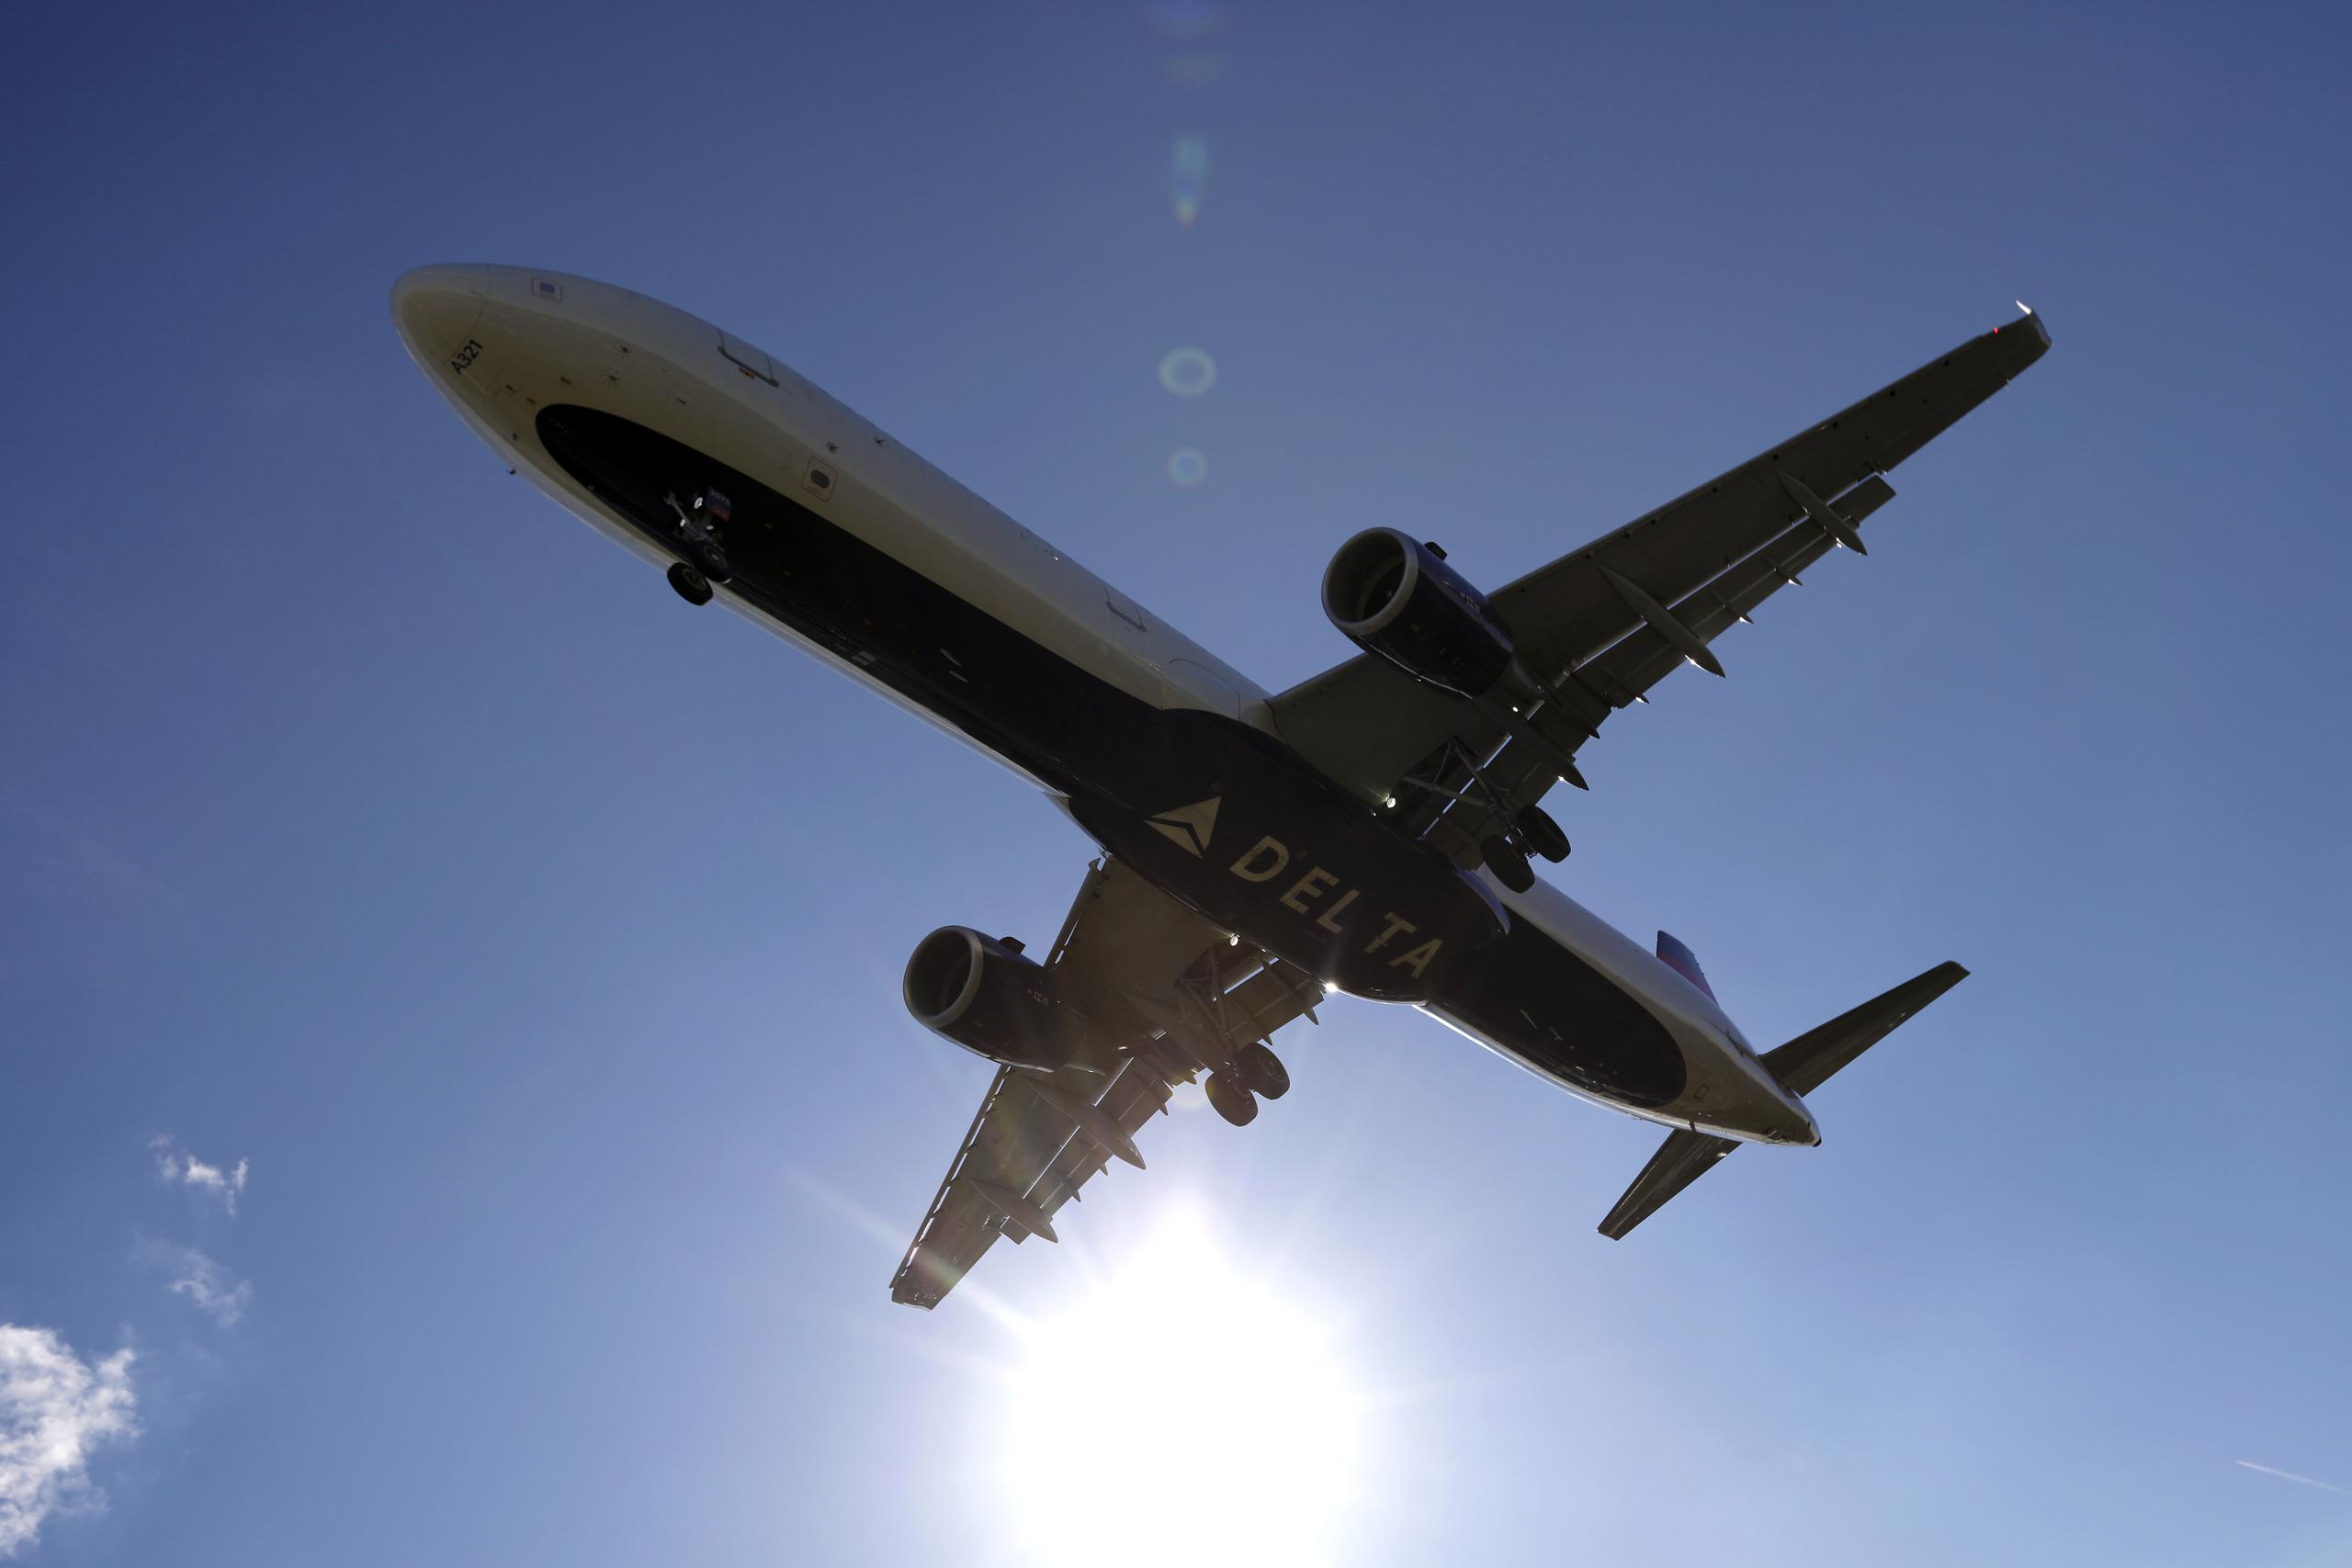 El avión “se detuvo en la pista después de un posible problema con algunos de sus neumáticos”, dijo Delta en un comunicado.